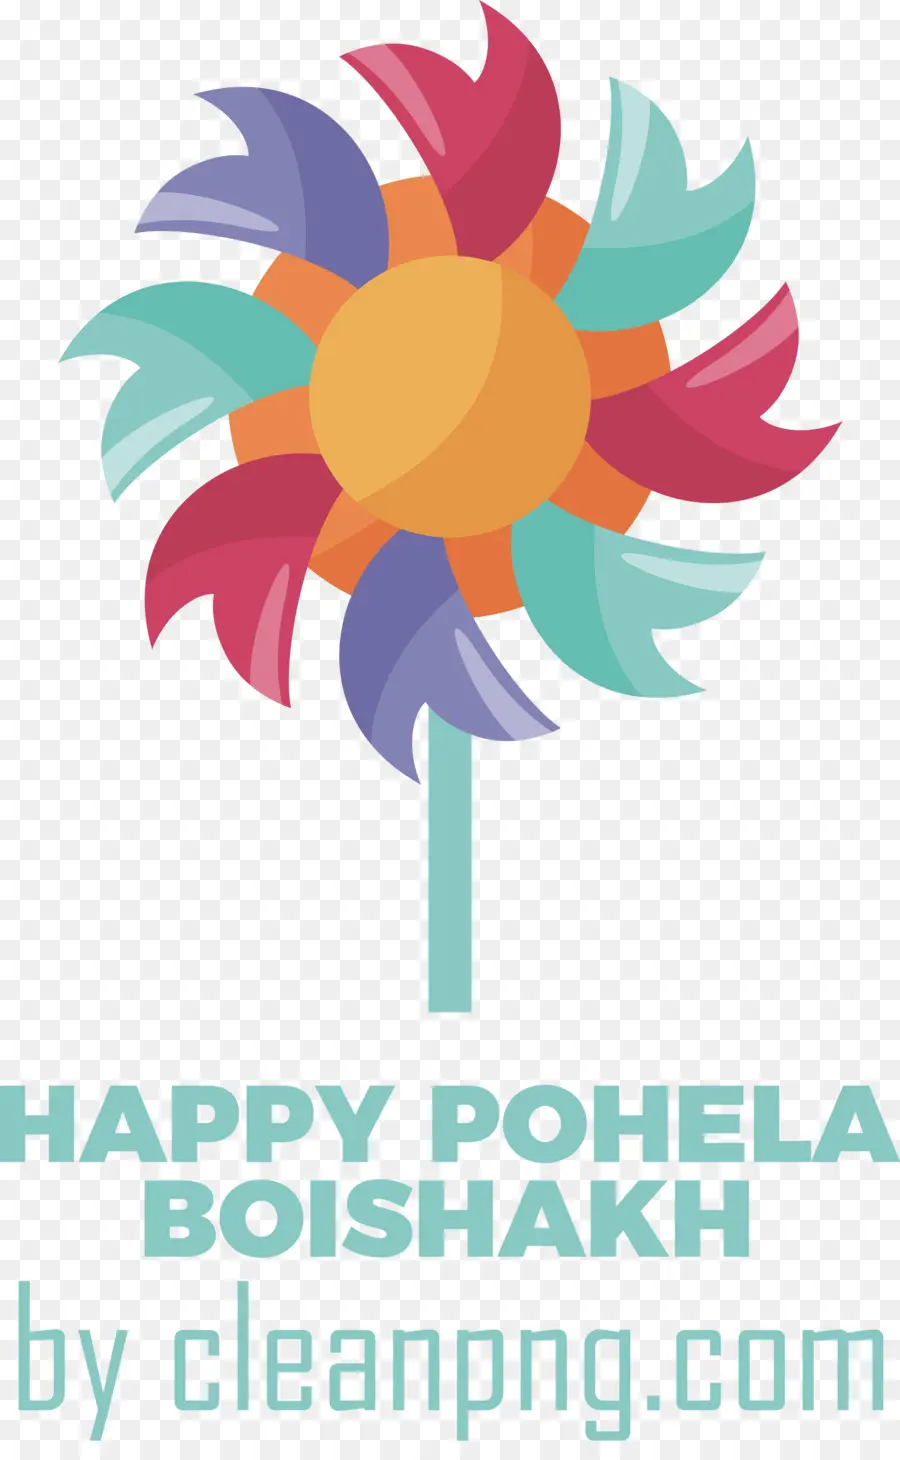 Pohela Boishakh，เทศกาลเบงกาลี PNG